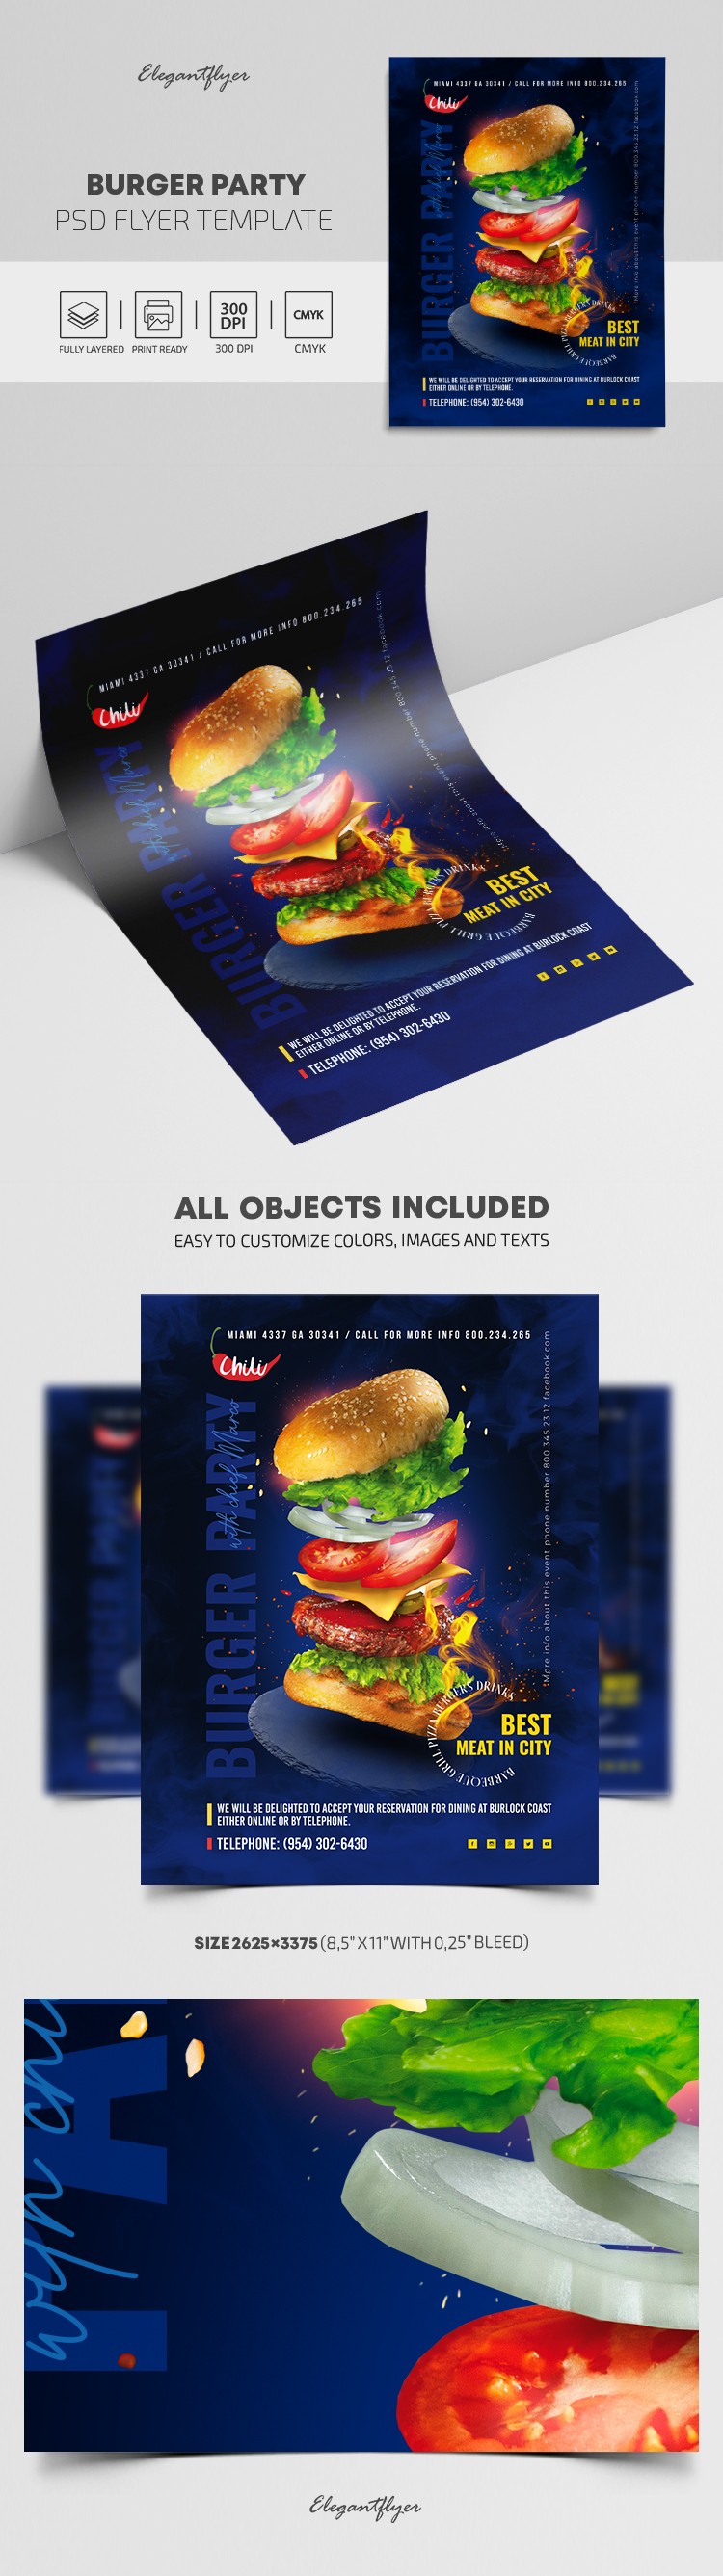 Burger Party Flyer by ElegantFlyer